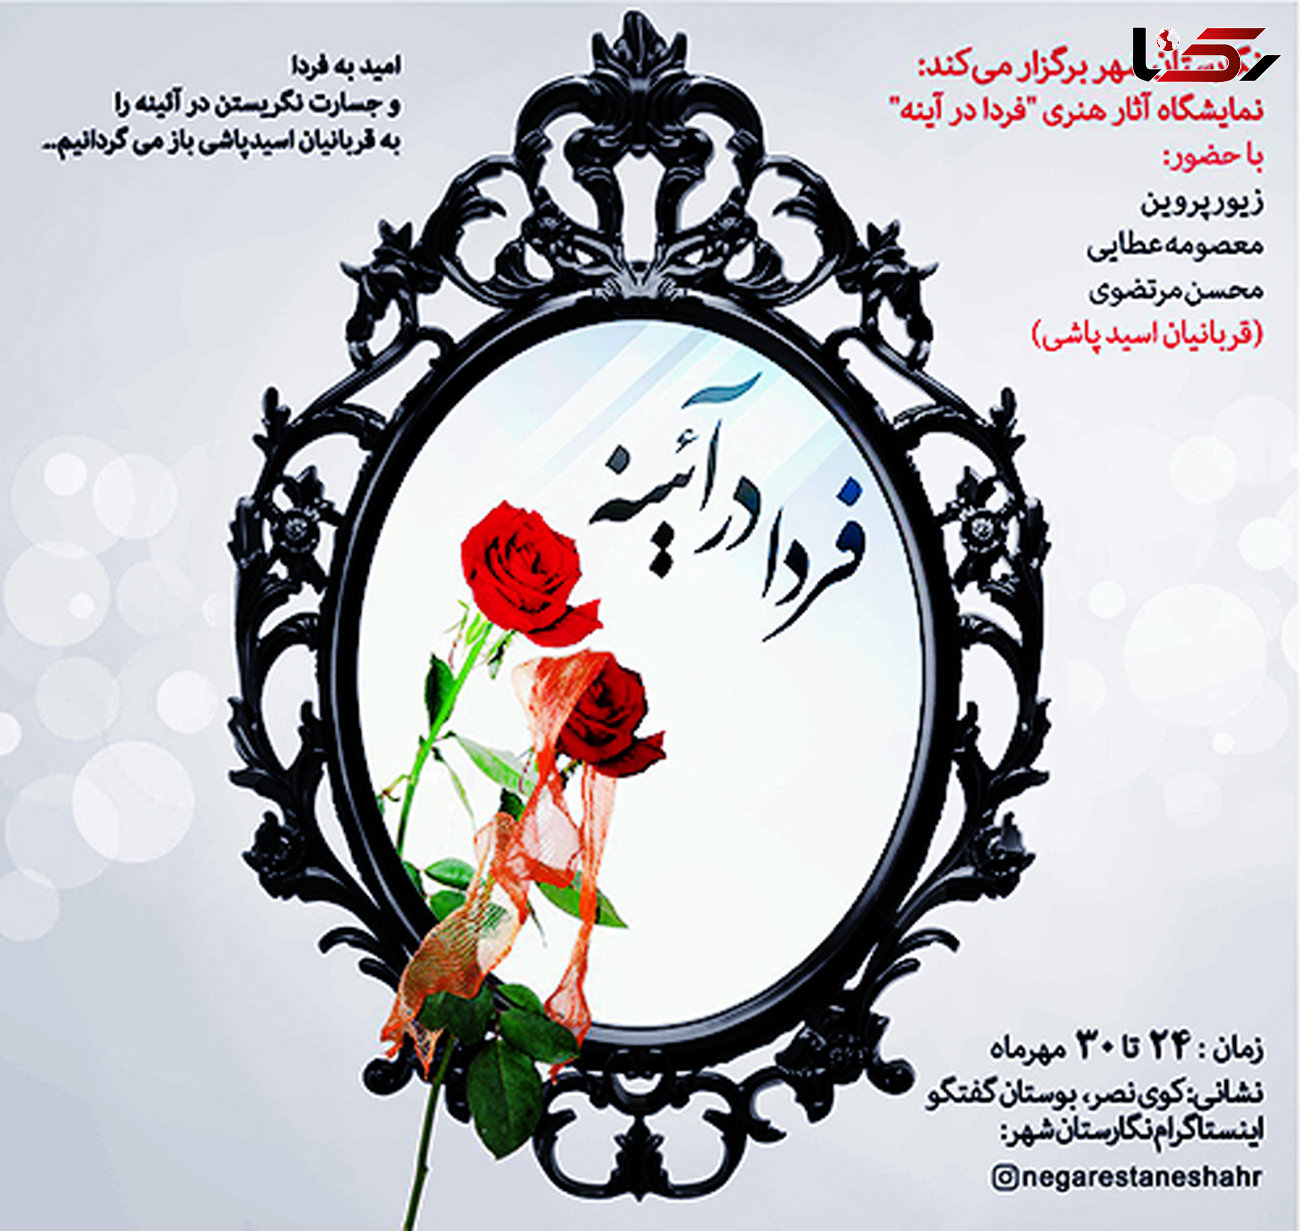 نمایشگاه "فردا در آئینه" قربانیان اسید پاشی در تهران